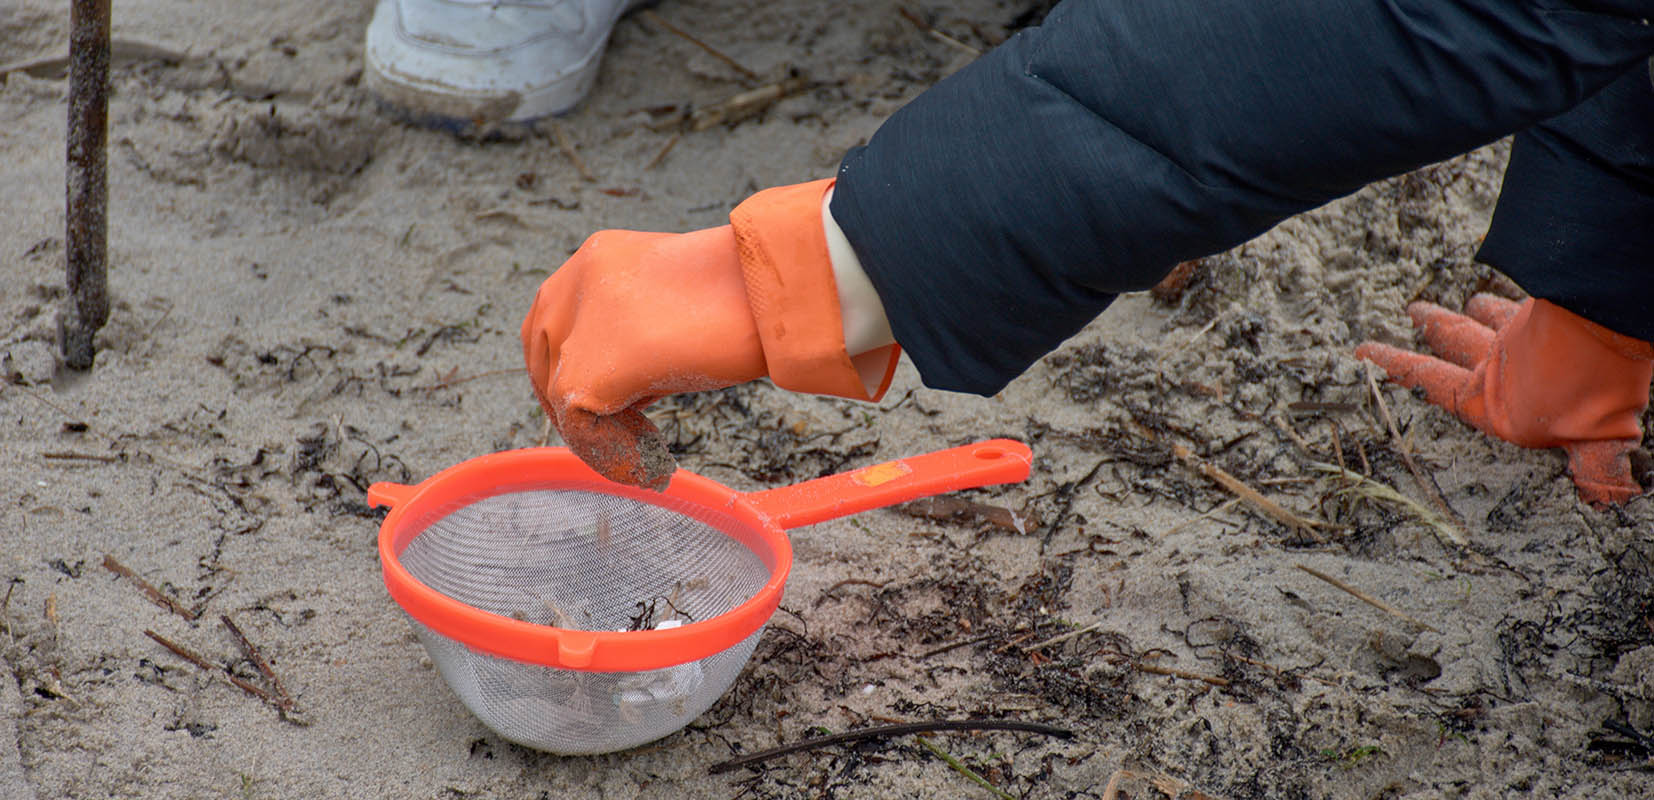 voluntarios recogiendo pélets de plástico en playas gallegas